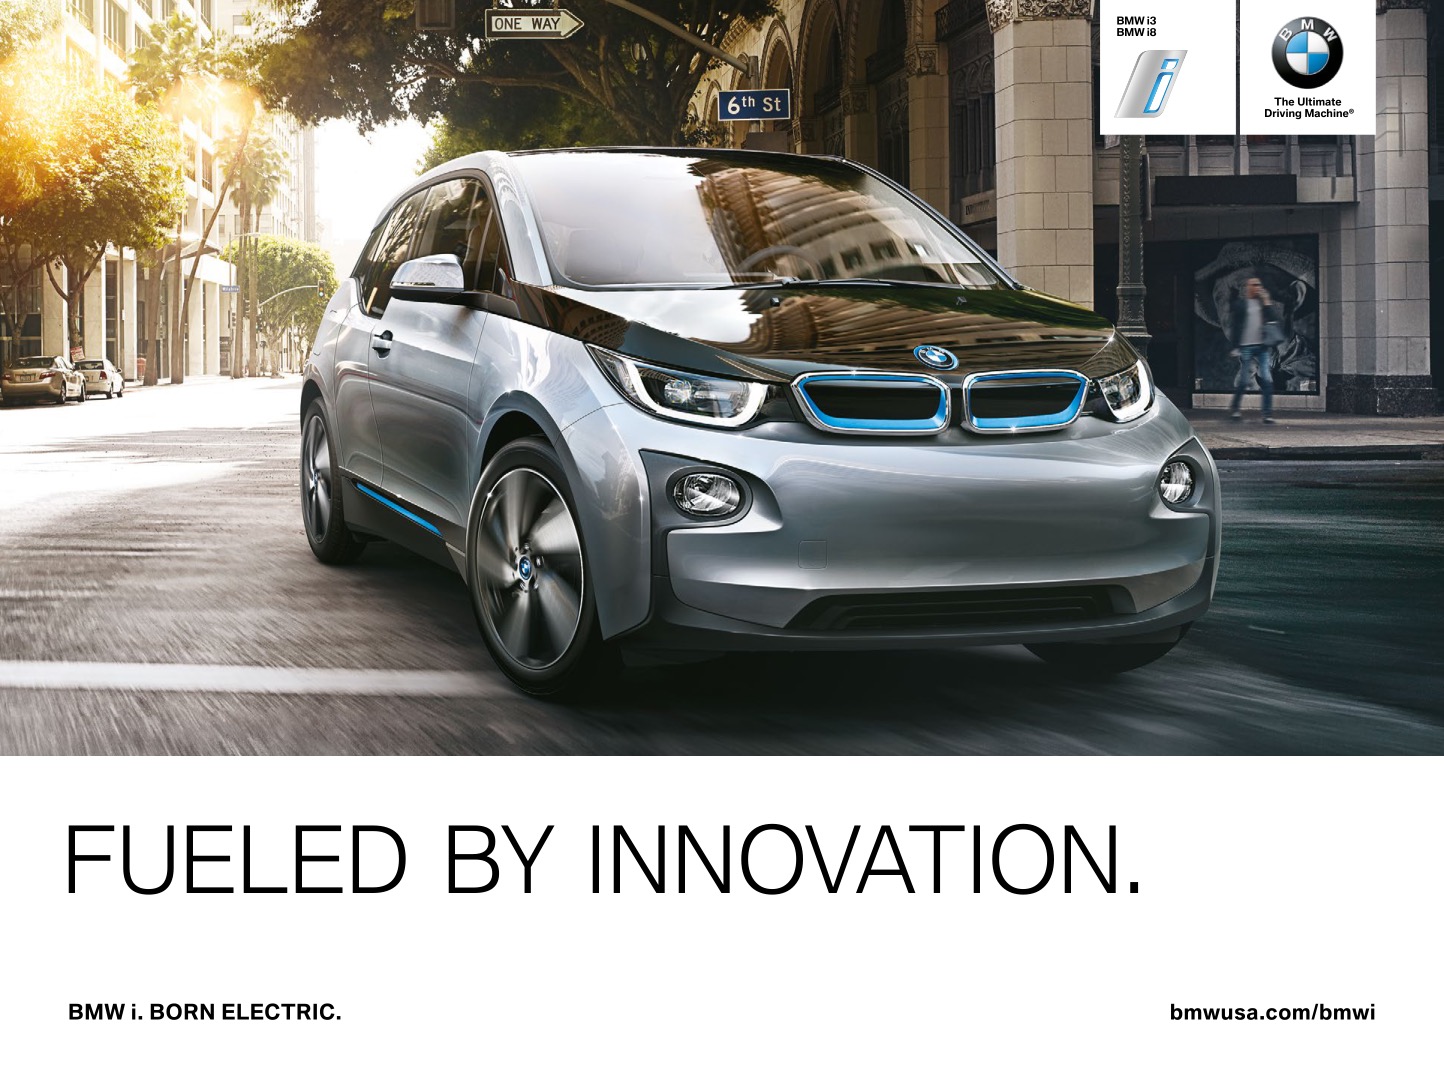 2015 BMW iSeries Brochure